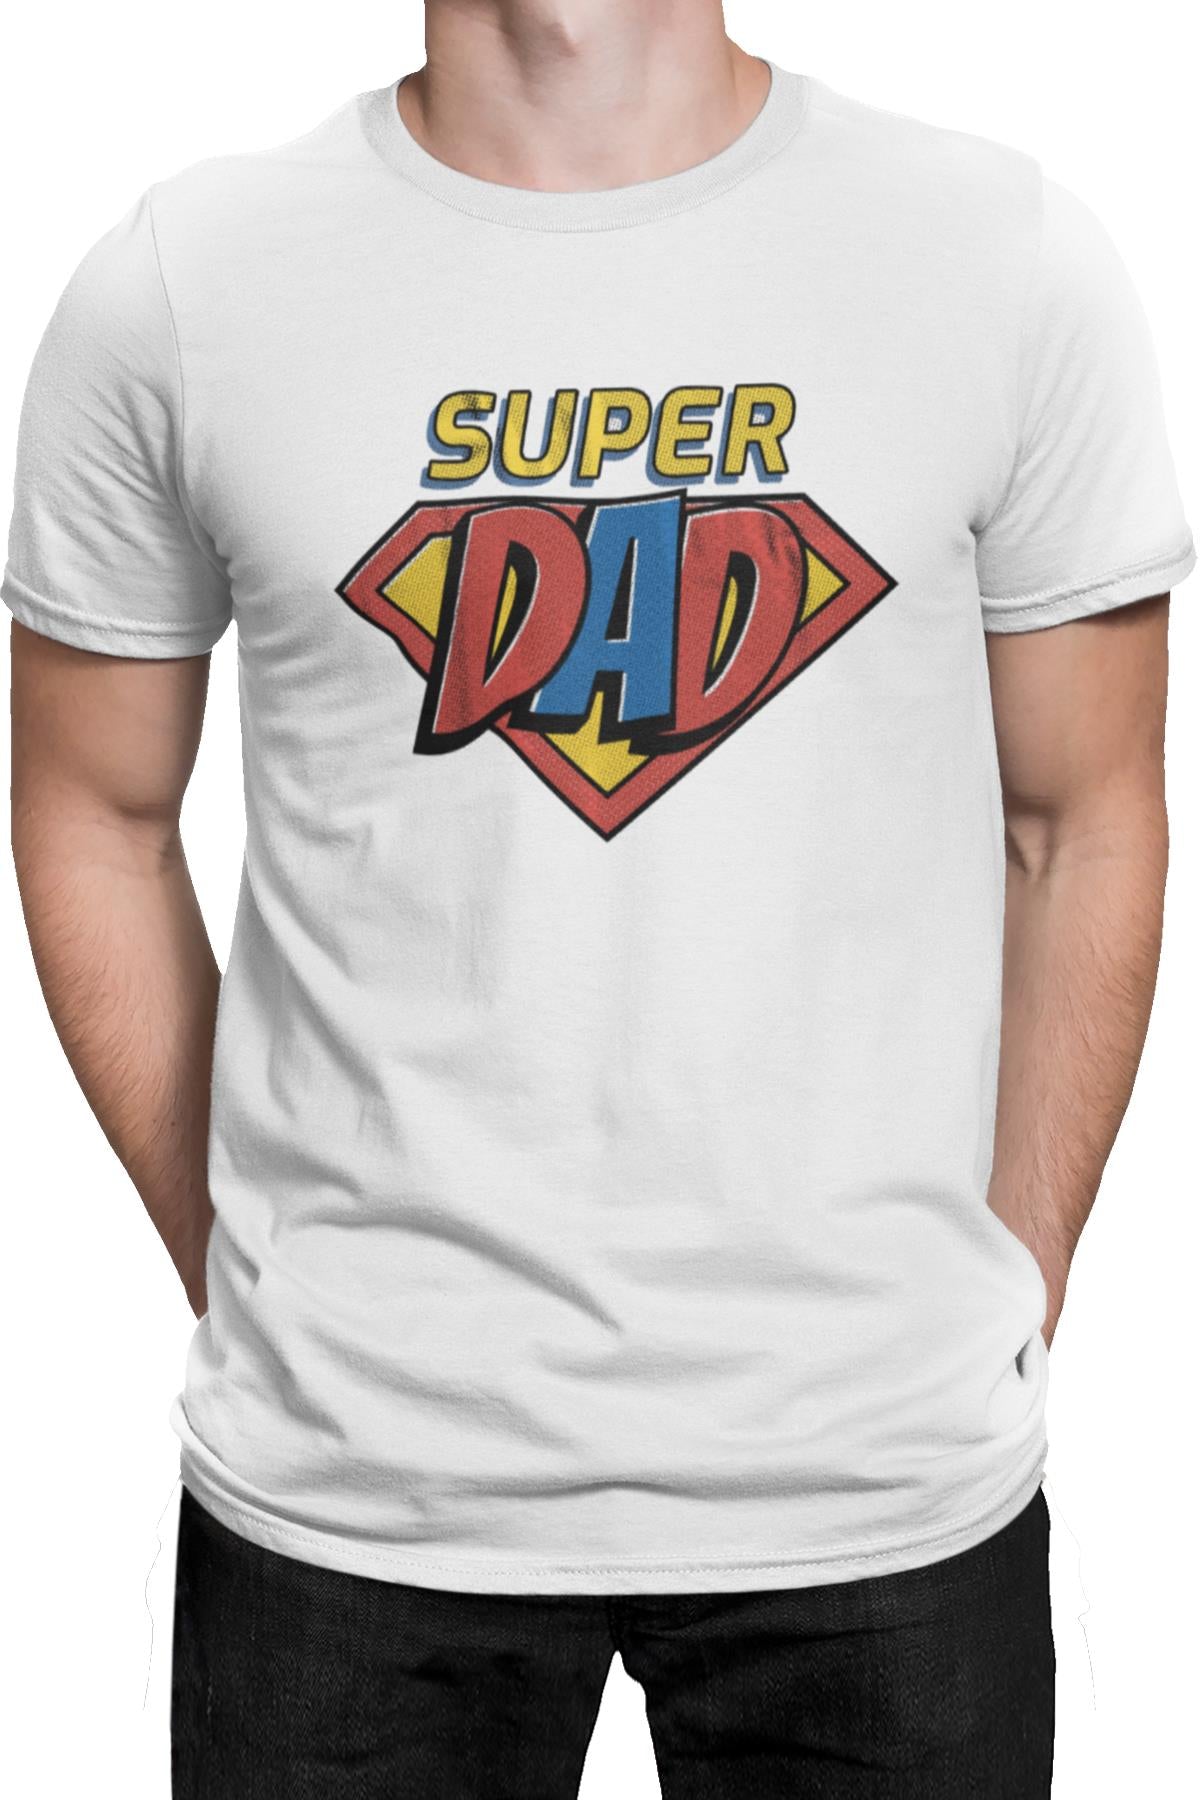 Super Dad White Men's Tshirt